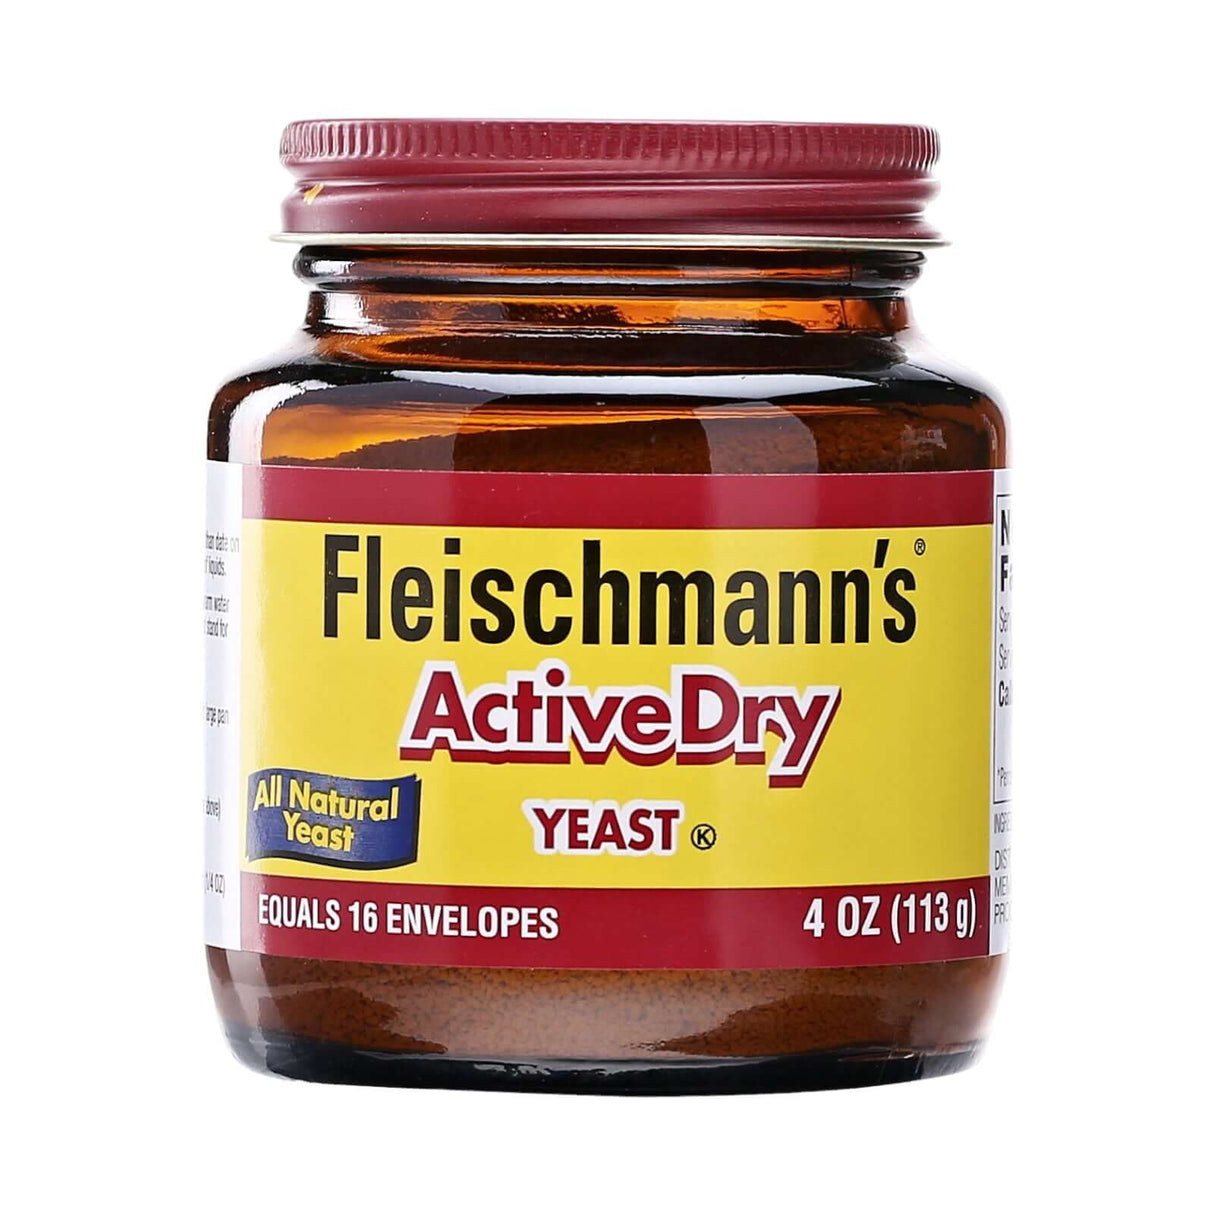 Fleischmann Active Dry Yeast Original 4 oz